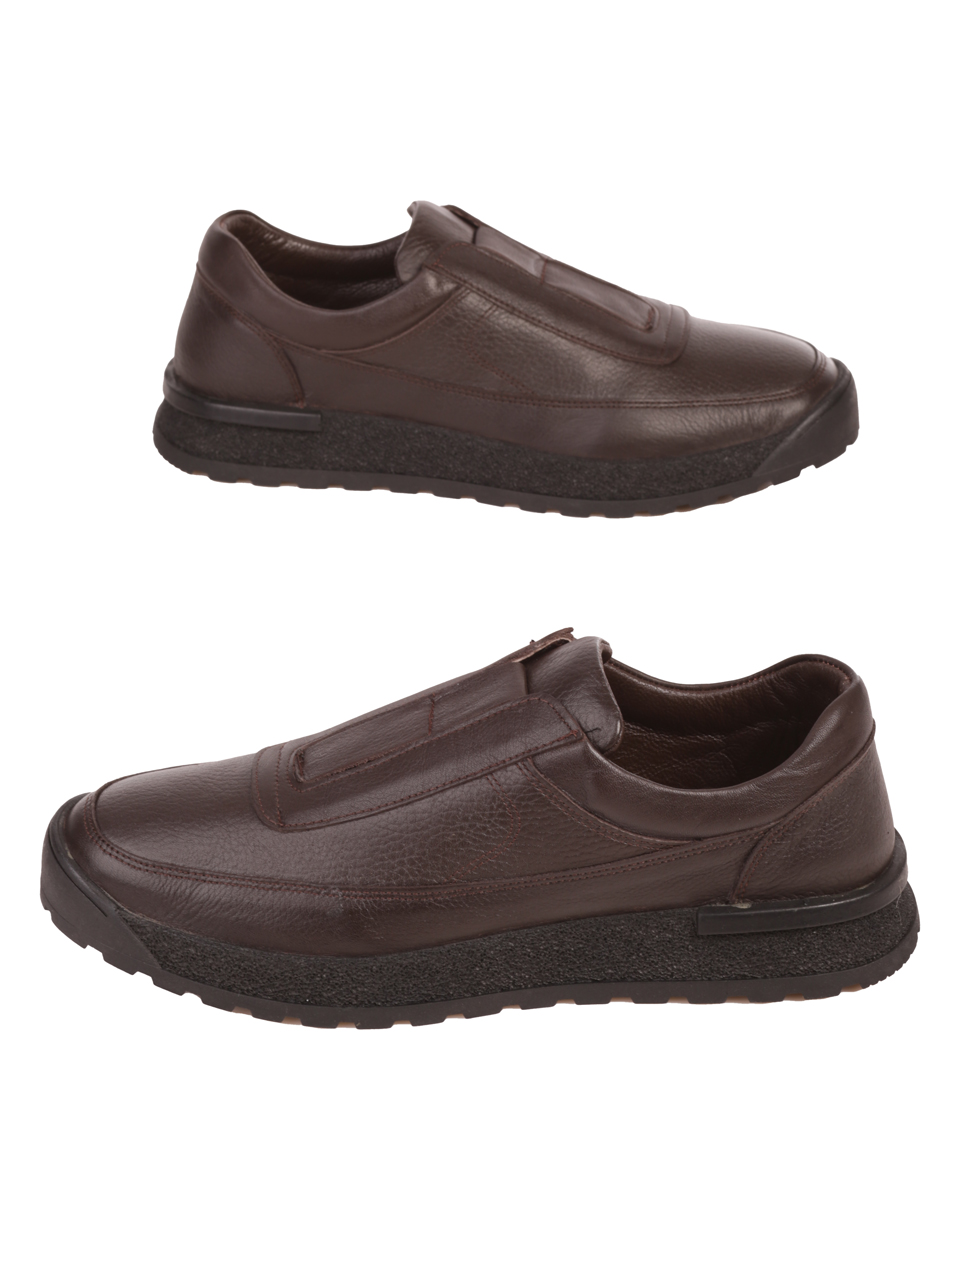 Мъжки обувки от естествена кожа в кафяво 7AT-23732 brown